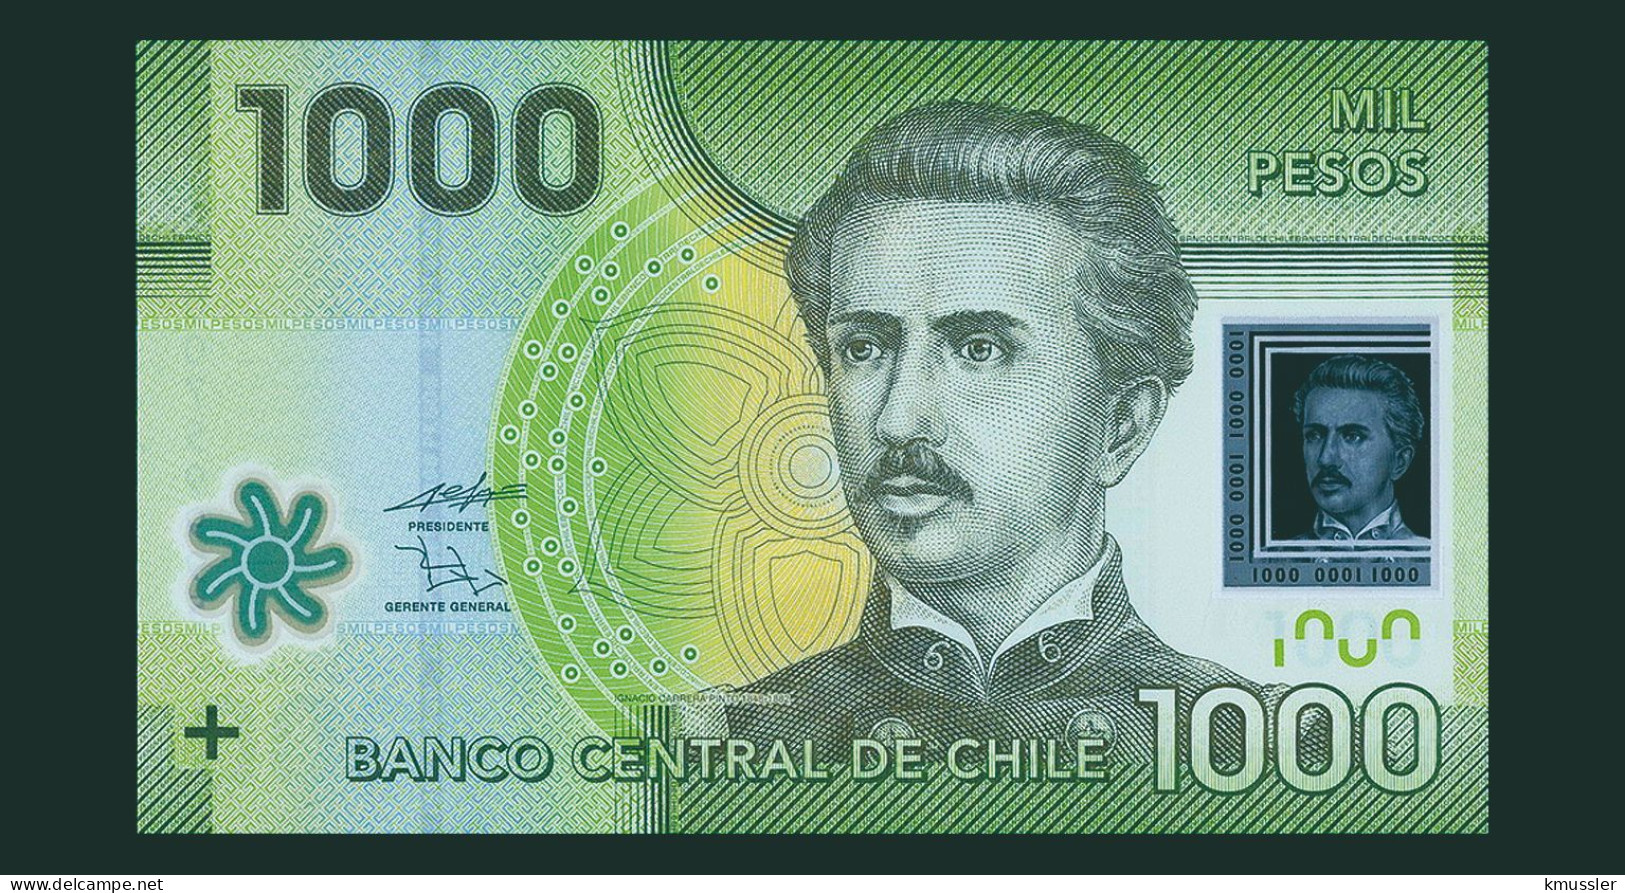 # # # Banknote Aus Chile 1.000 Pesos 2011 (P-161) UNC # # # - Cile